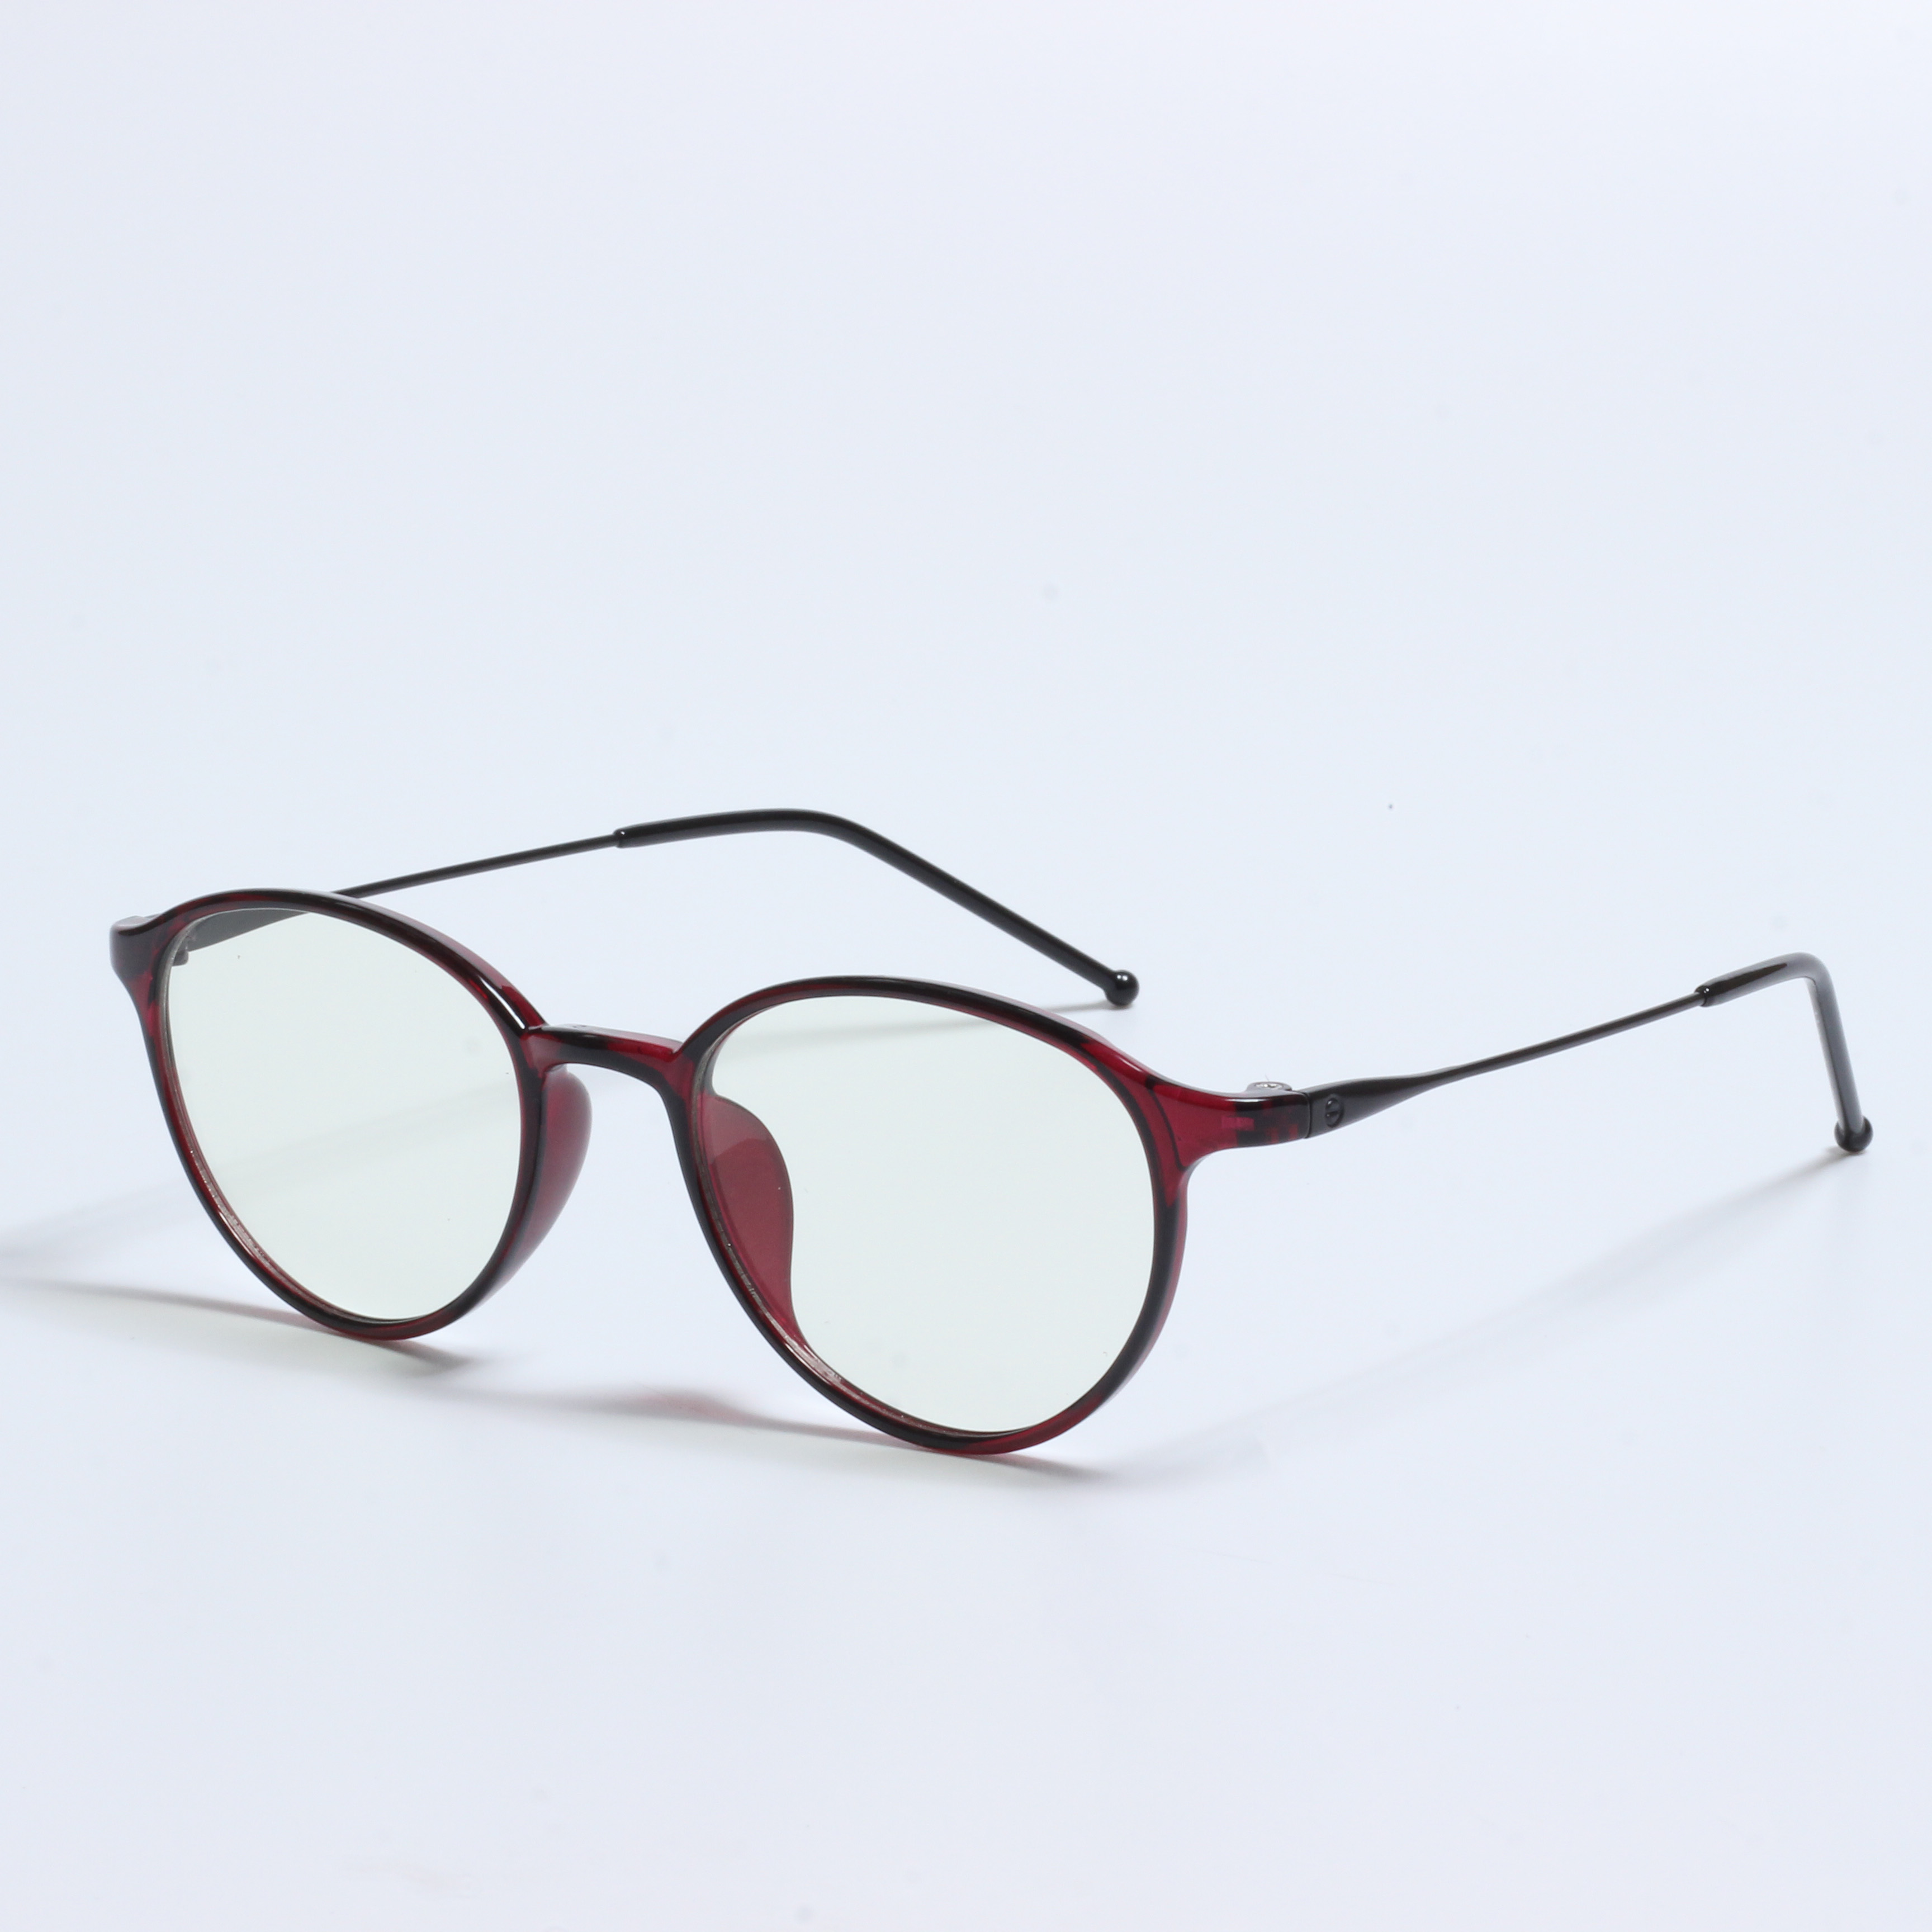 Stock clearance TR Uban sa metal optical glasses frame (11)